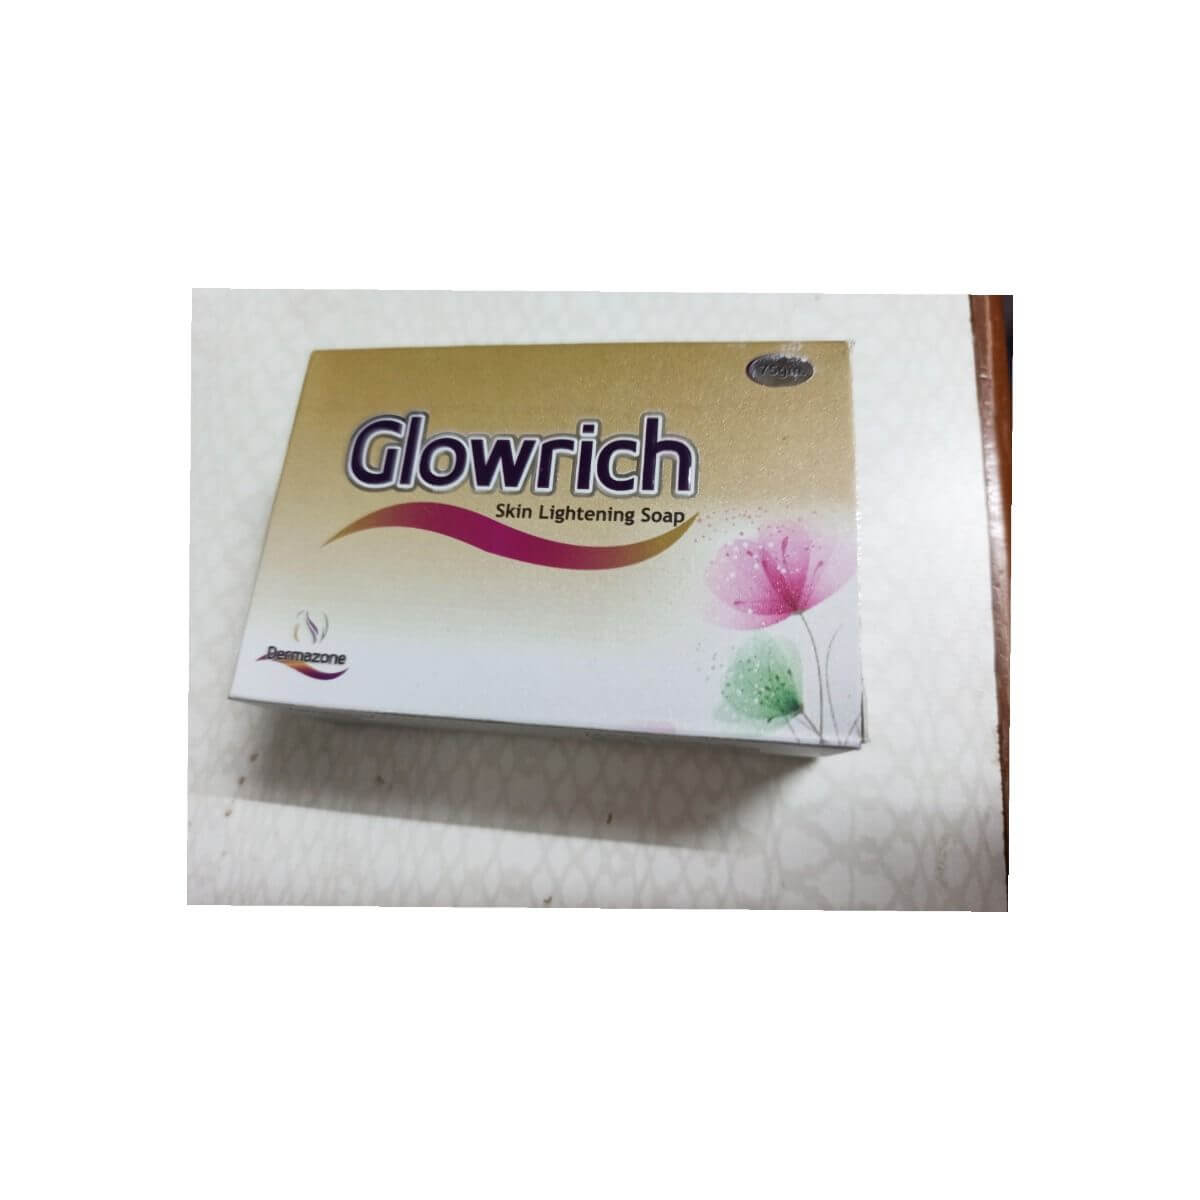 GLOWRICH SKIN LIGHTENING SOAP PACK OF 2